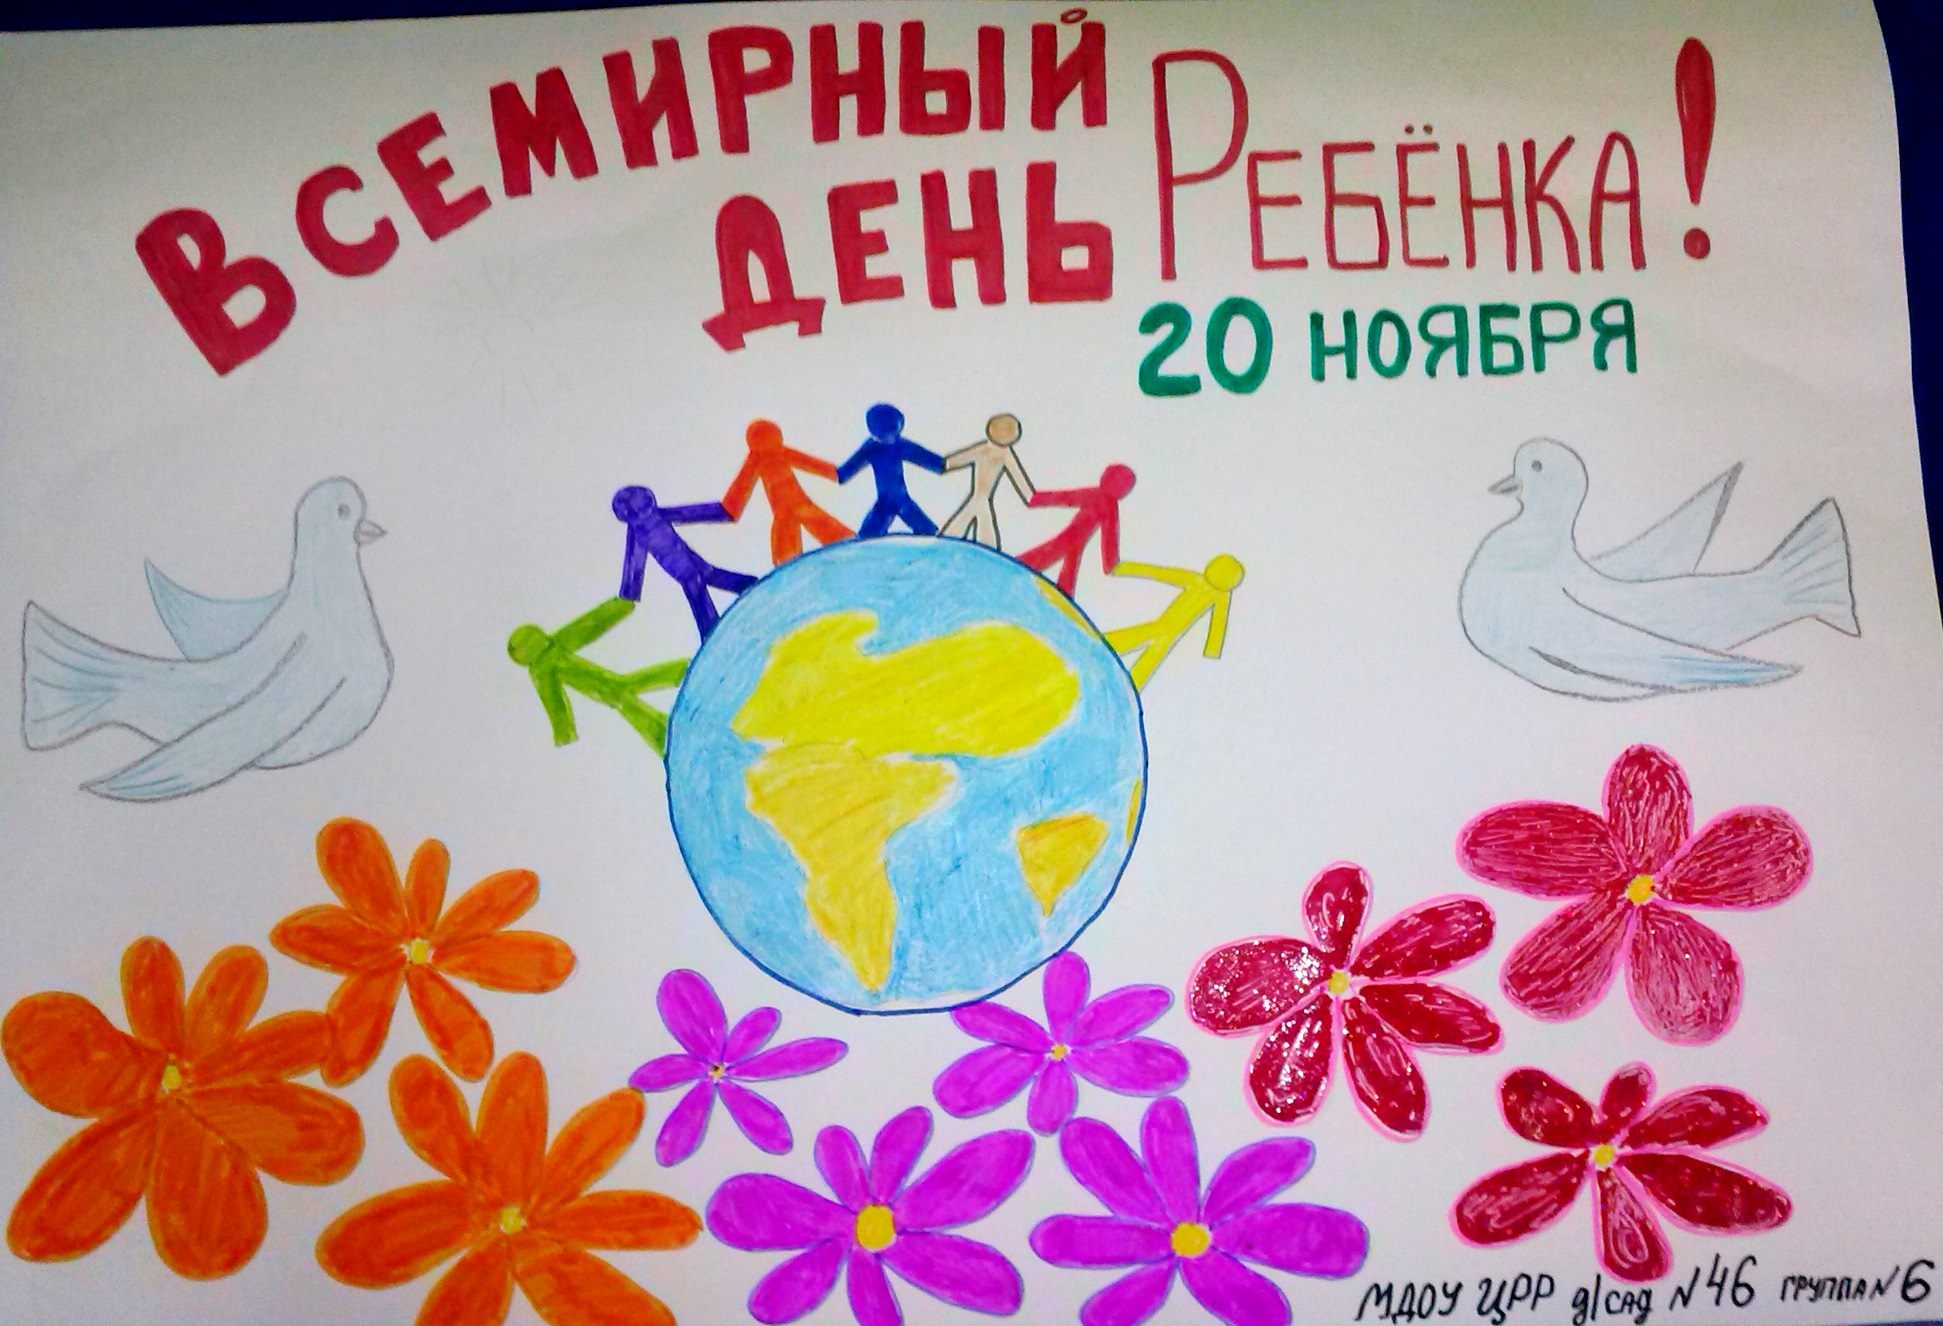 Всемирный день ребенка рисунки детей. Всемирный день ребенка. День защиты детей плакат. Всемирный день ребенка плакат. Плпакат Всемирный день ребёнка.